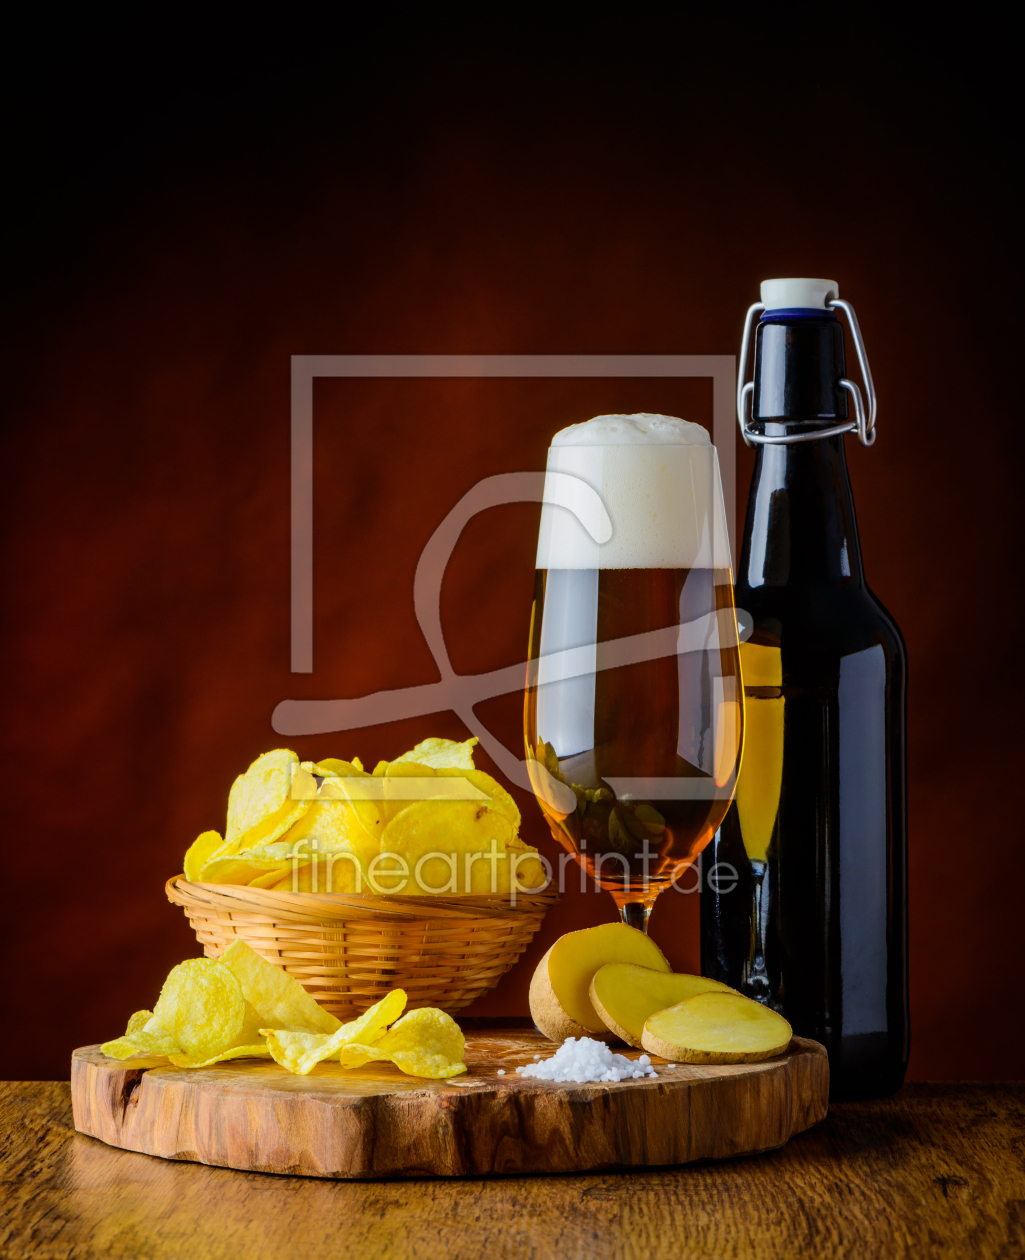 Bild-Nr.: 11772666 Bier und Kartoffelchips erstellt von xfotostudio